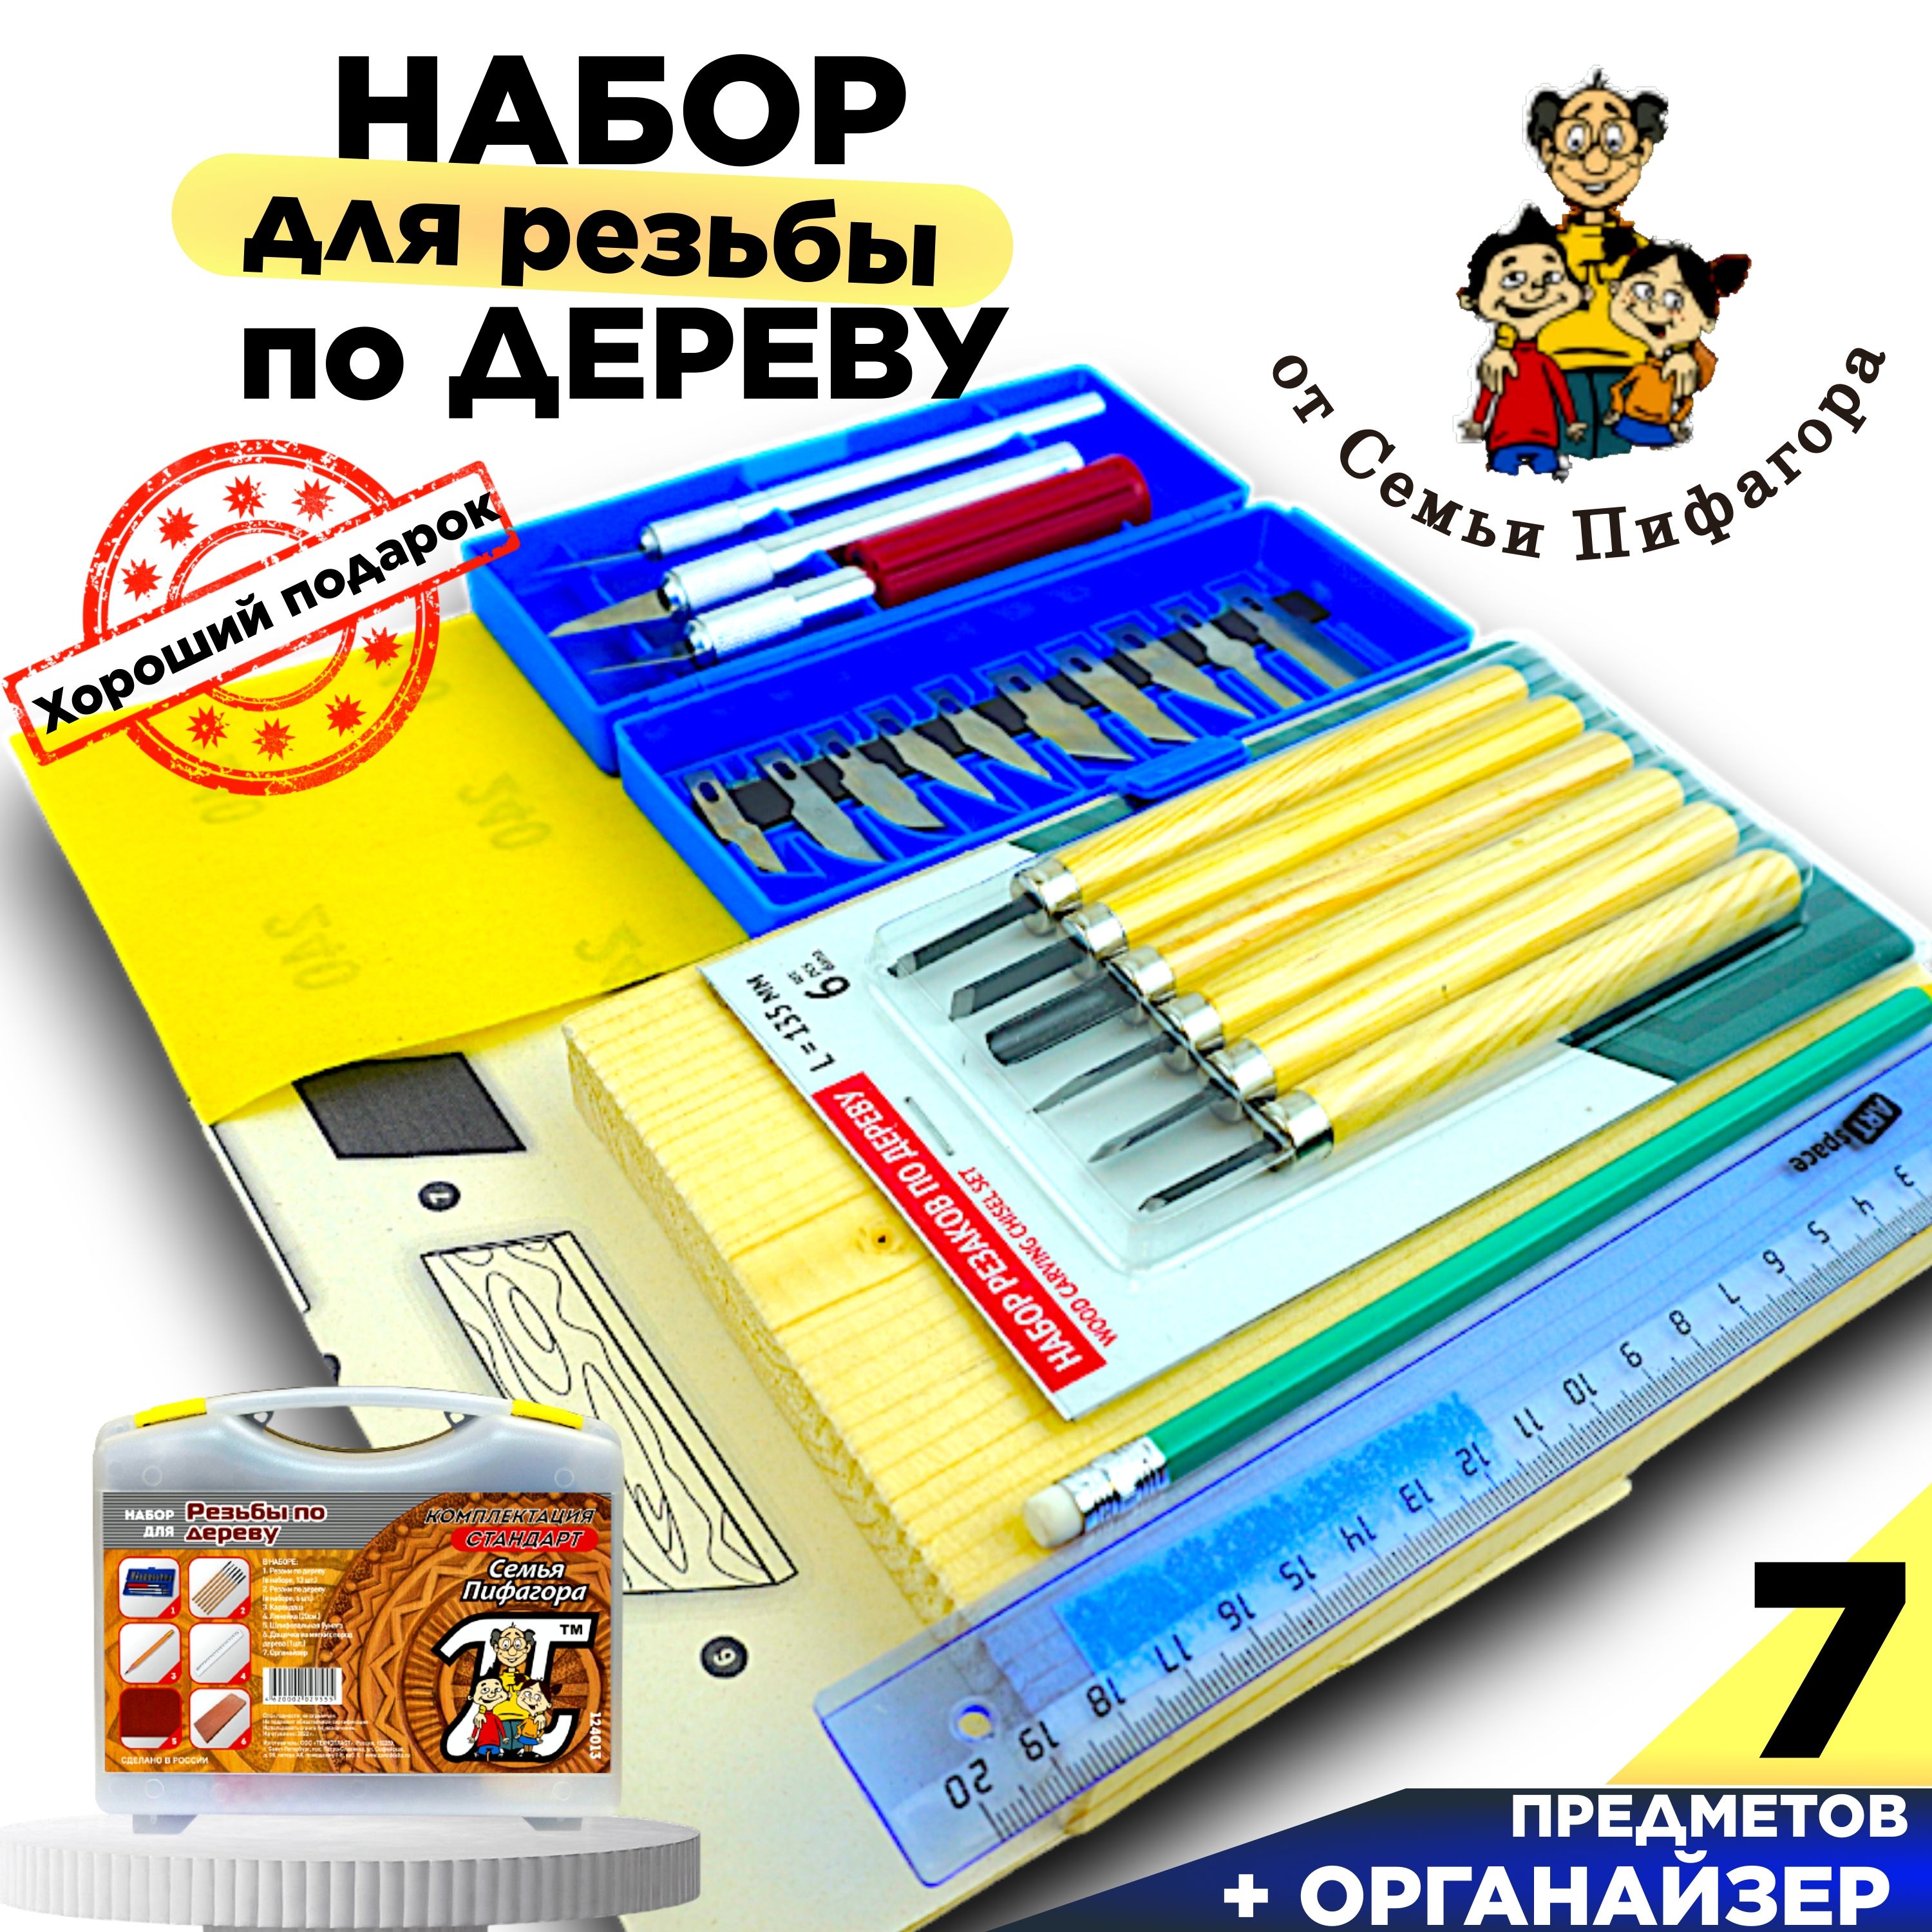 «Волшебные ручки» - интернет-магазин товаров для хобби, творчества и рукоделия в Кирове